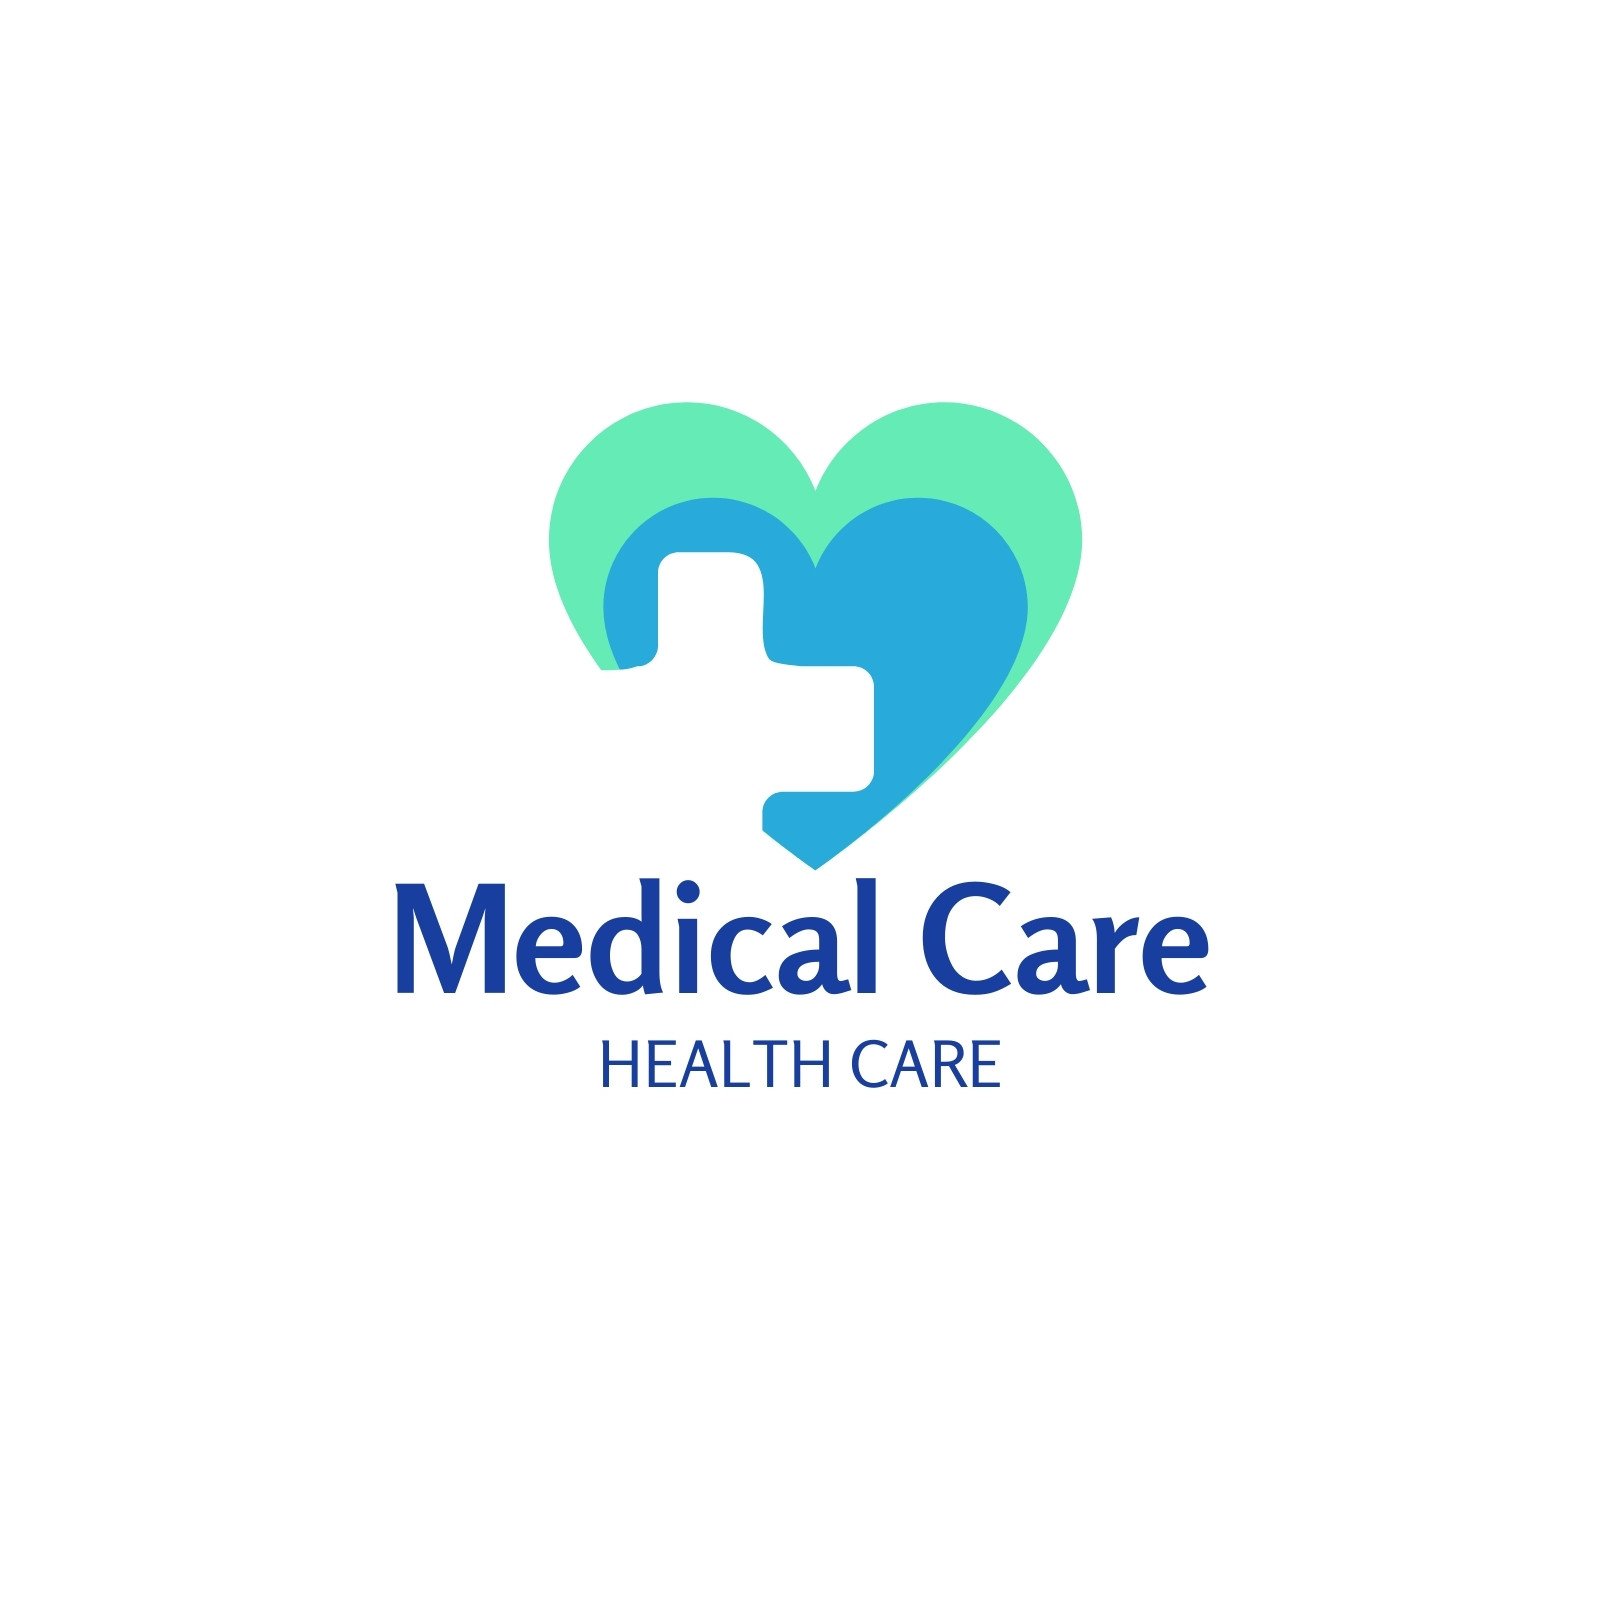 hospital logo images